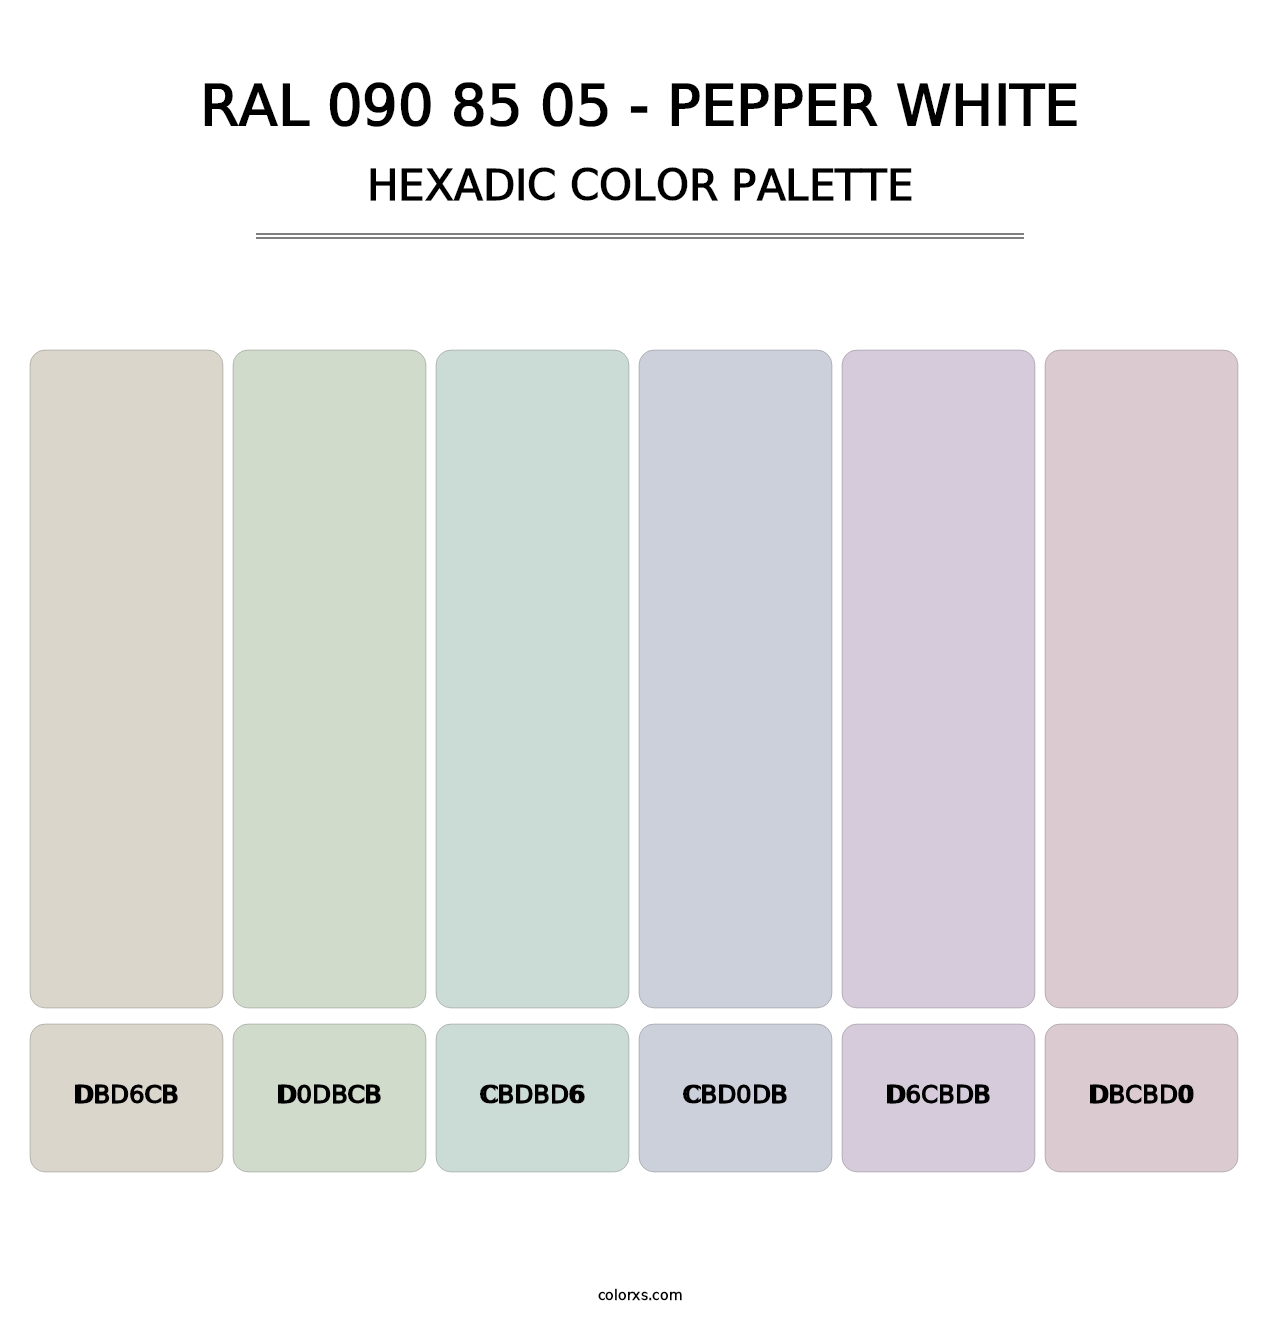 RAL 090 85 05 - Pepper White - Hexadic Color Palette